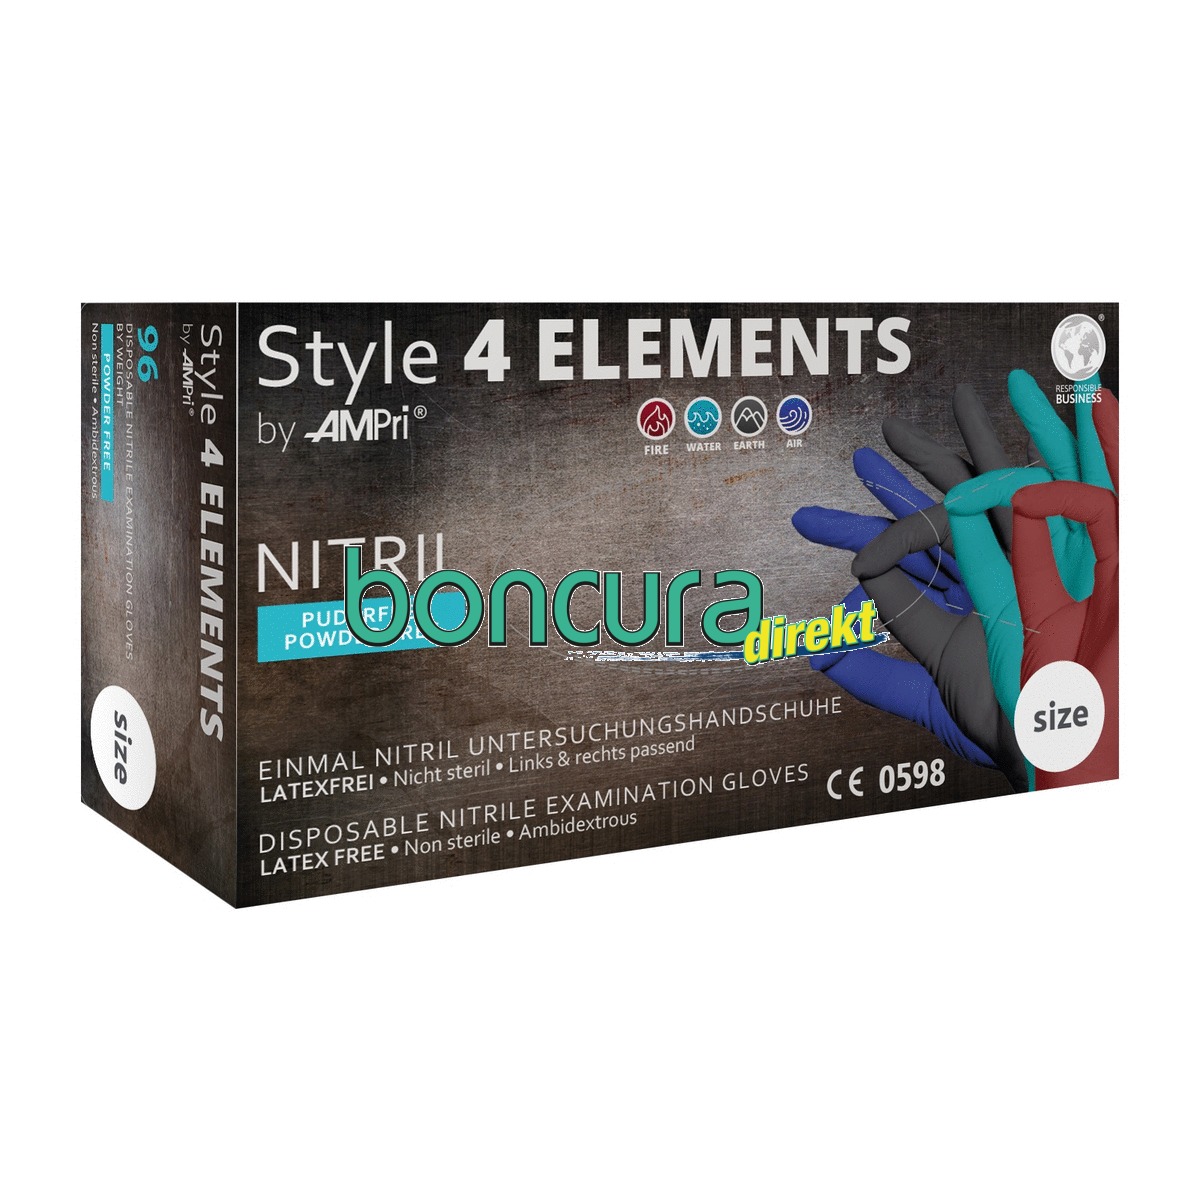 Einmalhandschuhe Nitril, puderfrei STYLE 4 ELEMENTS, 4 Farben in einer Box